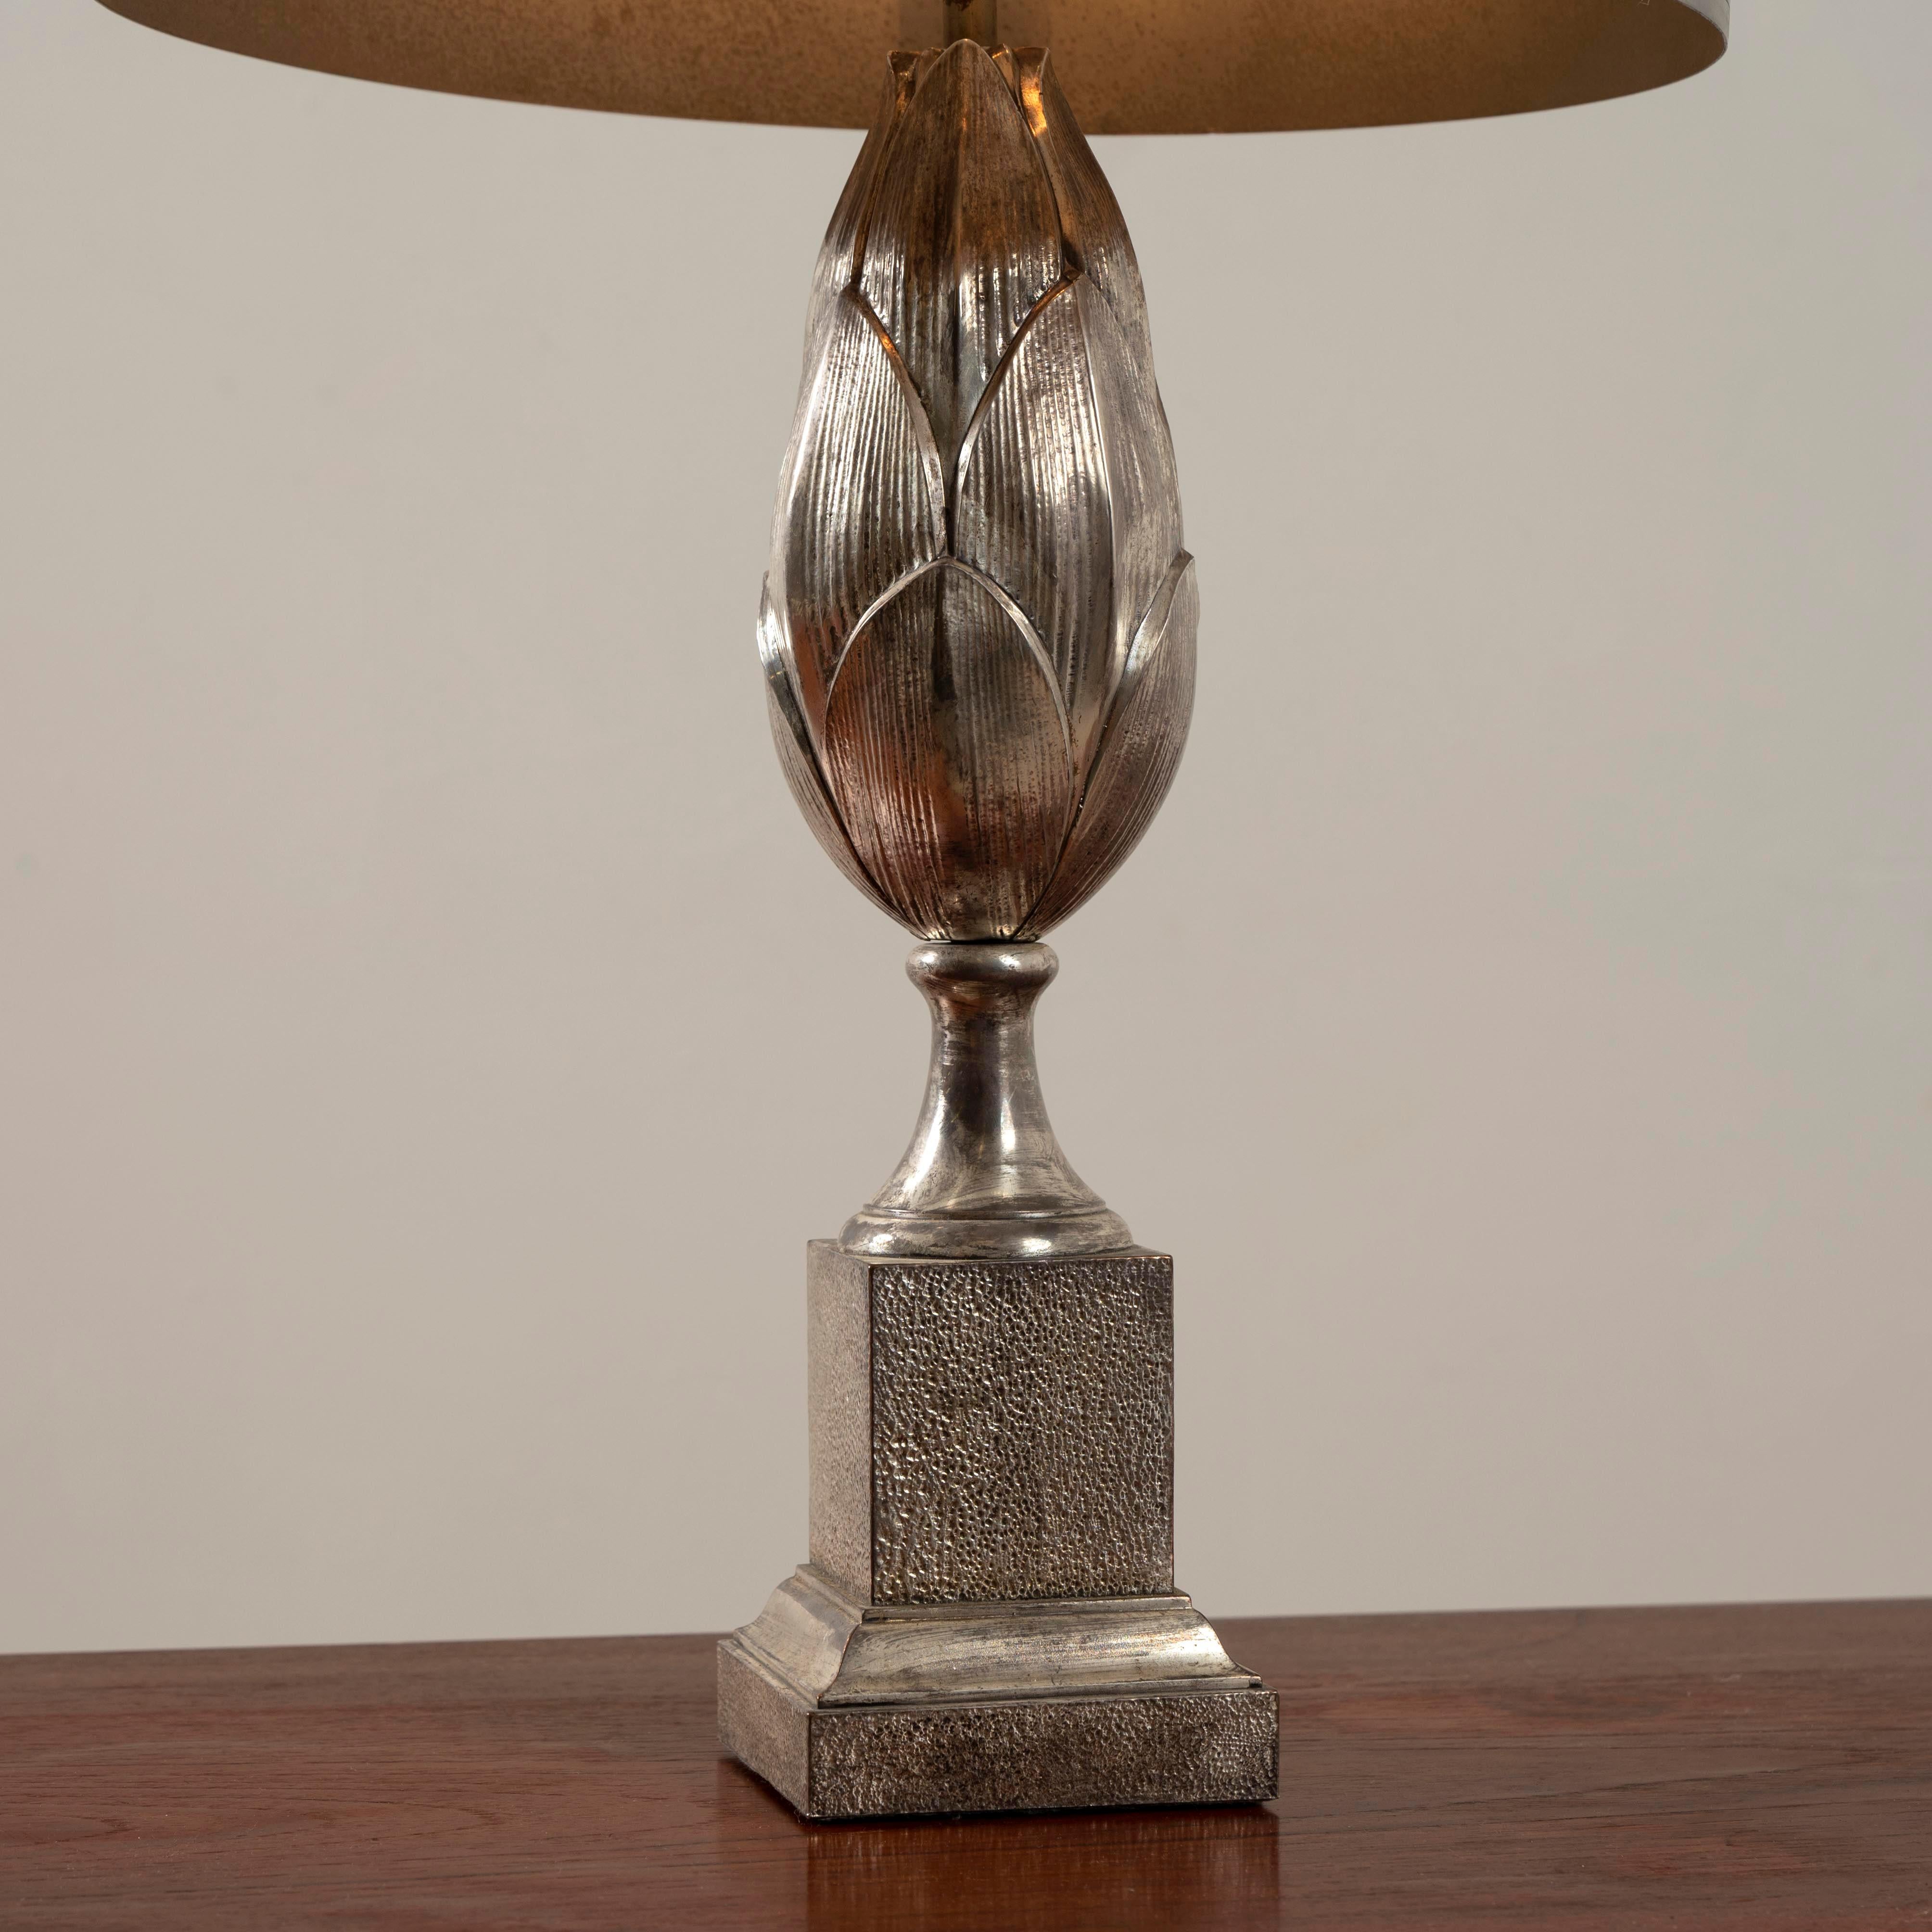 Lampe de la Maison Charles & Fils Paris en bronze nickelé, signé.

 Hauteur : 68 cm diamètre : 35 cm